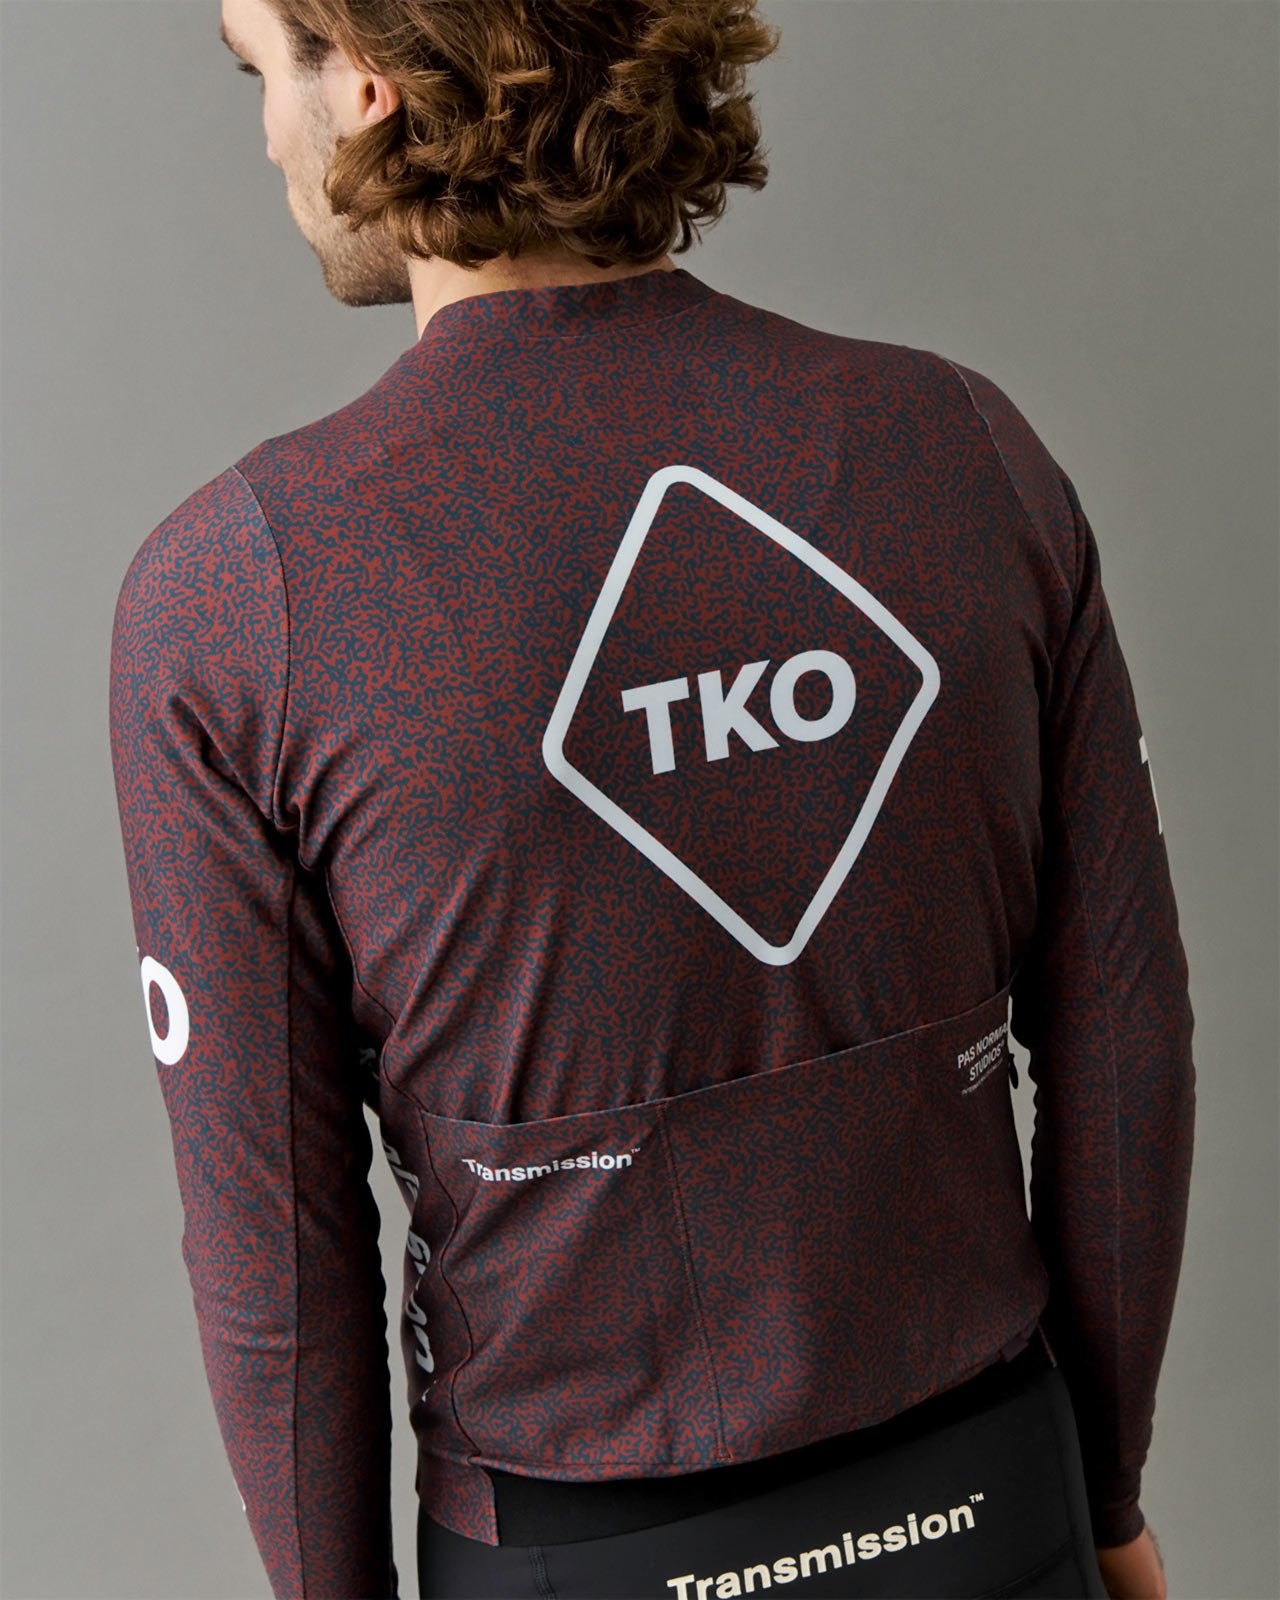 Men's T.K.O. Long Sleeve Jersey